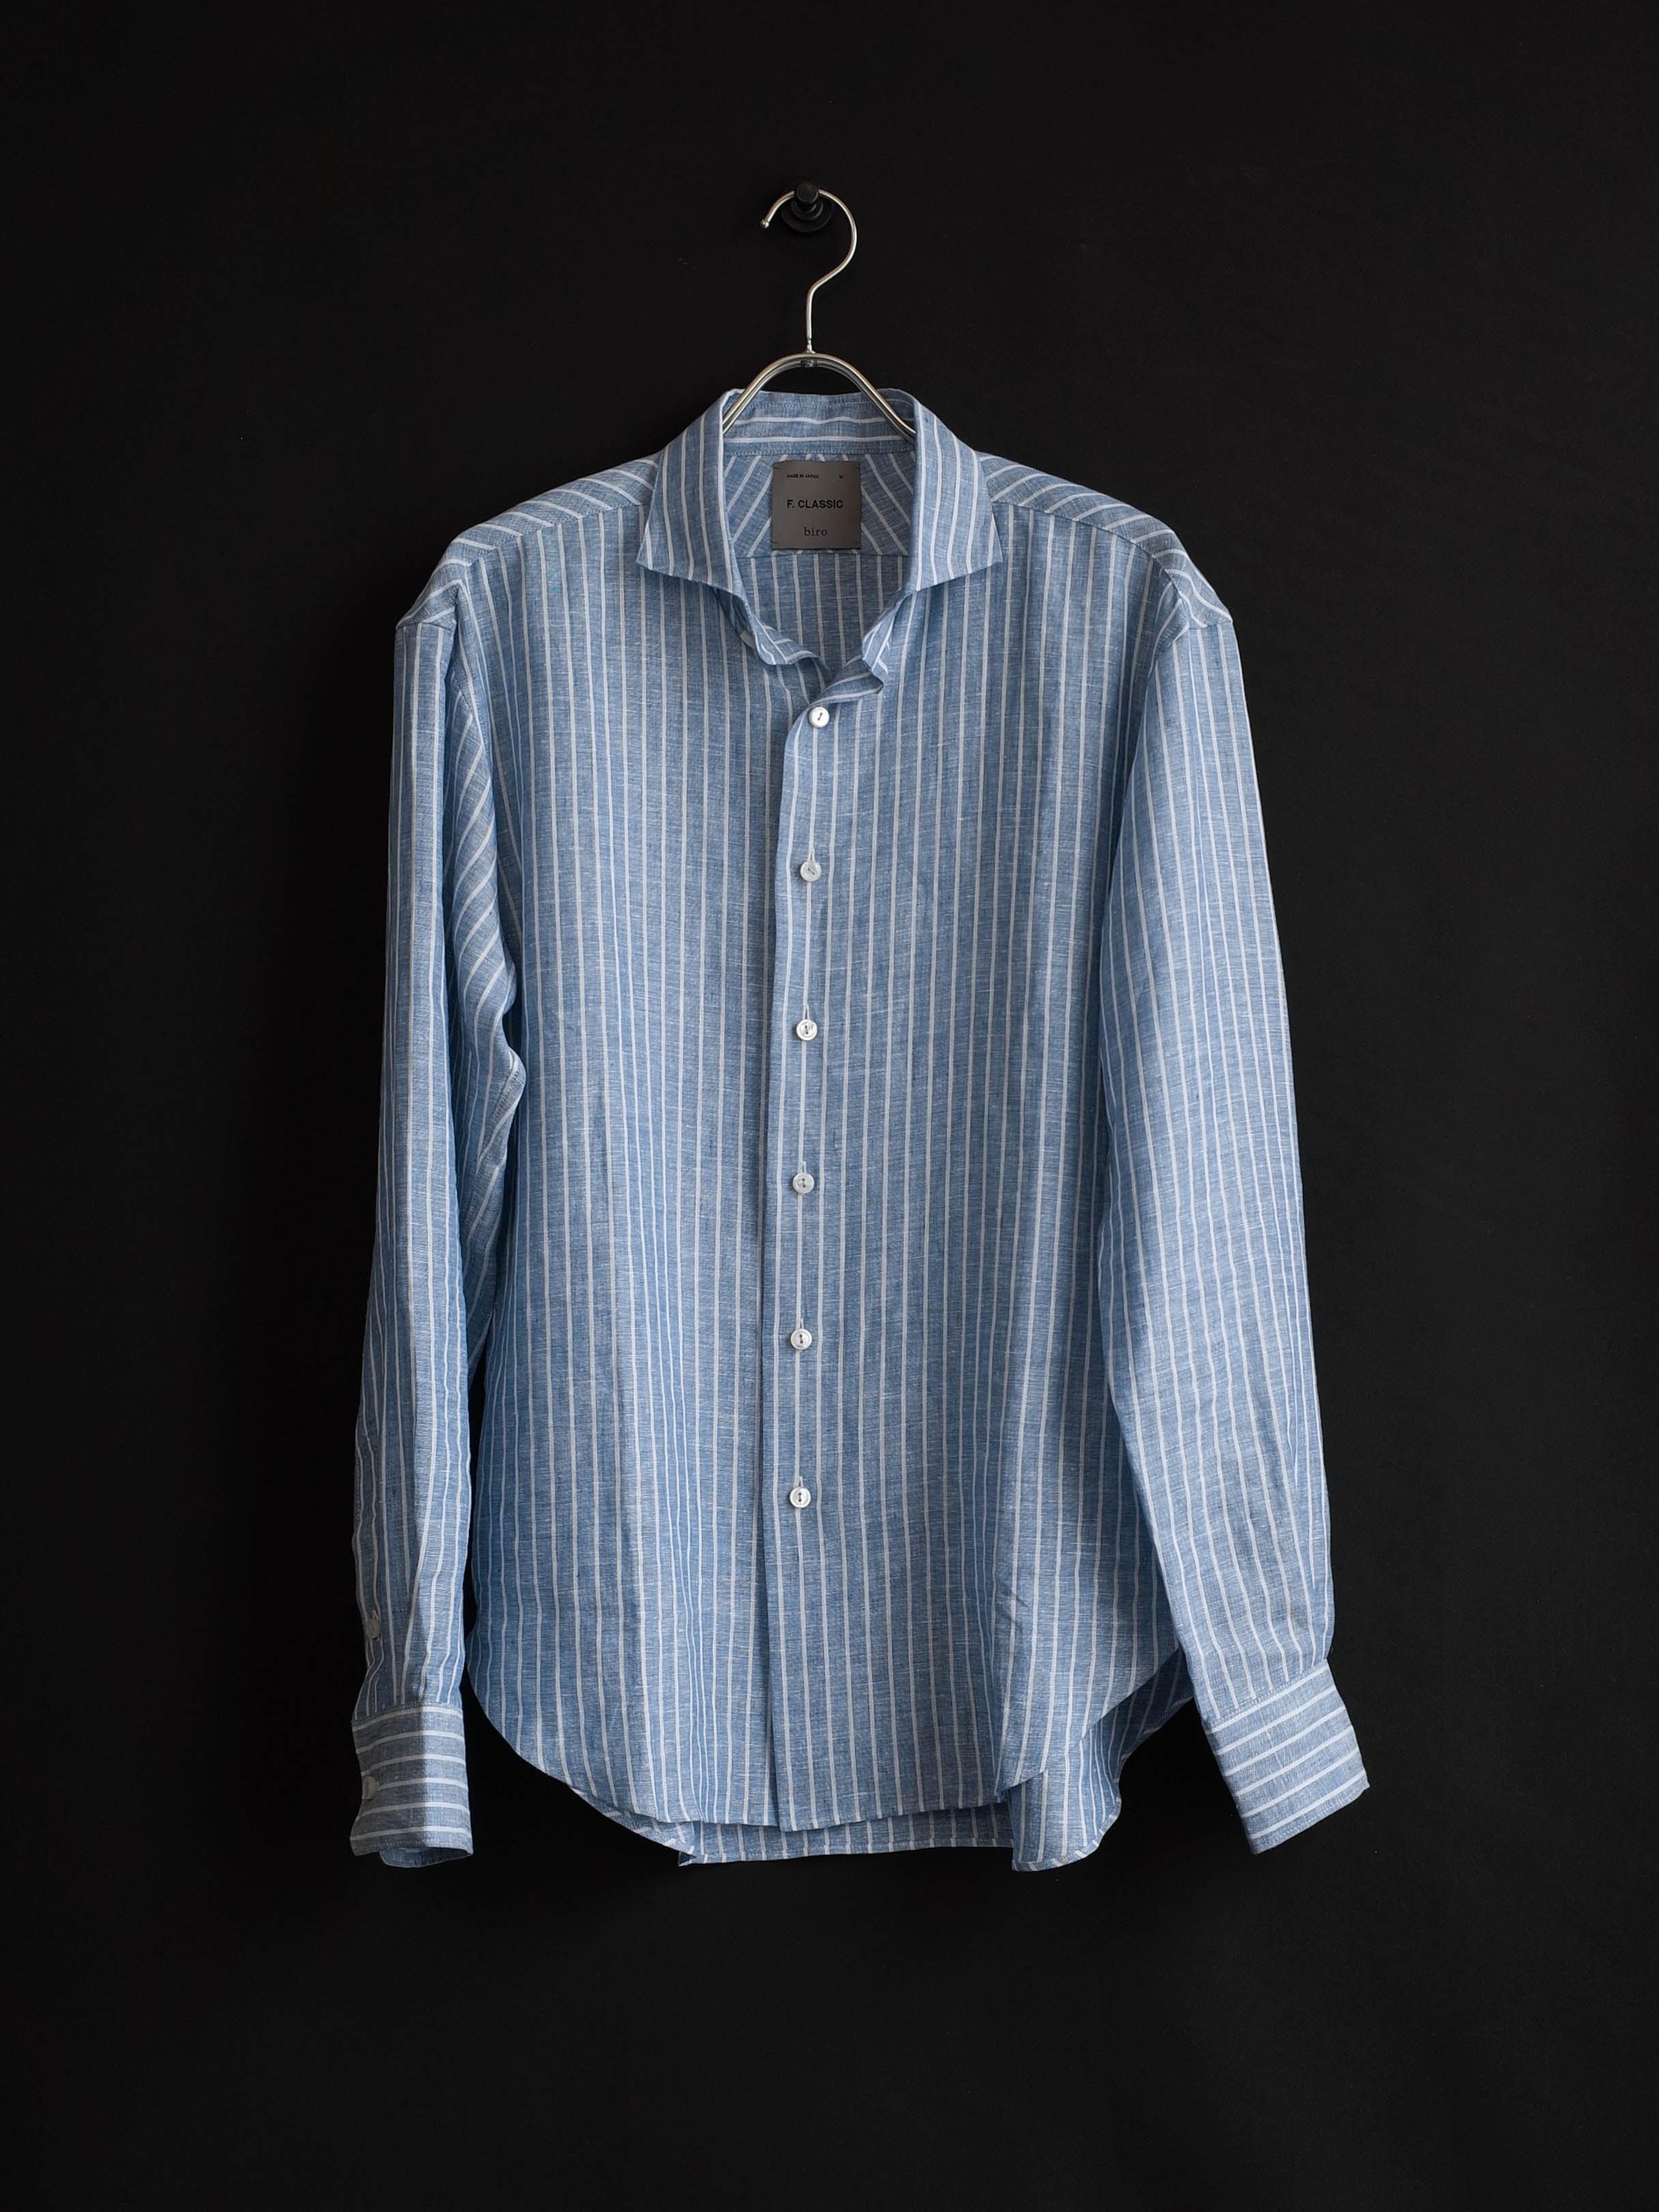 Our Next F. CLASSIC Drop, Striped Linen Shirt. – biro